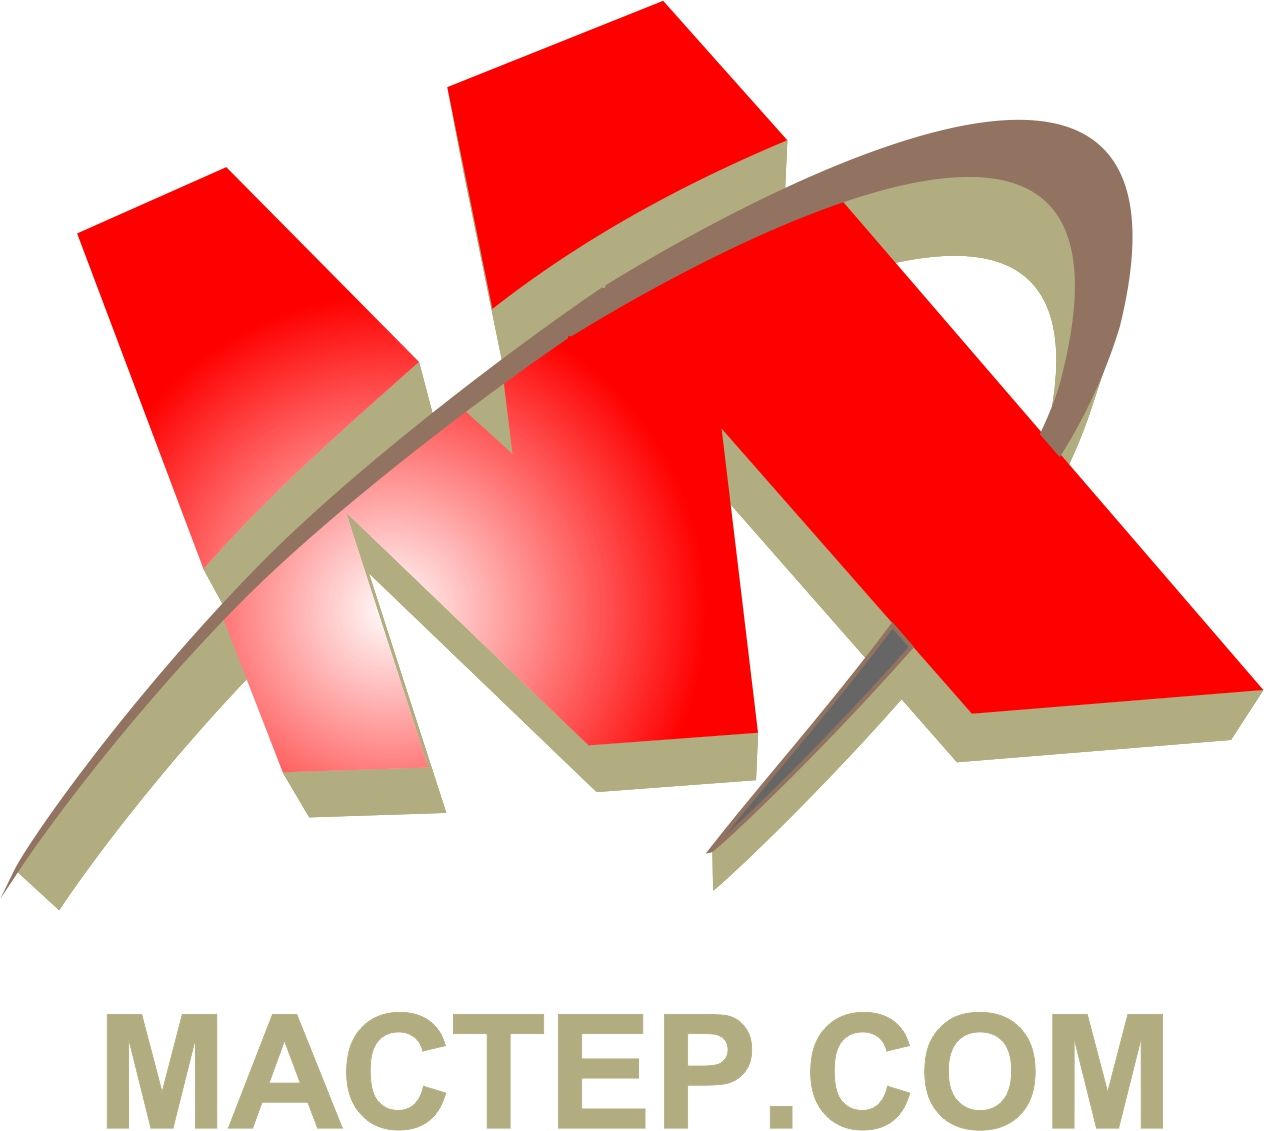 MasterCom (логотип, фирменный стиль) - дизайнер Krasivayav